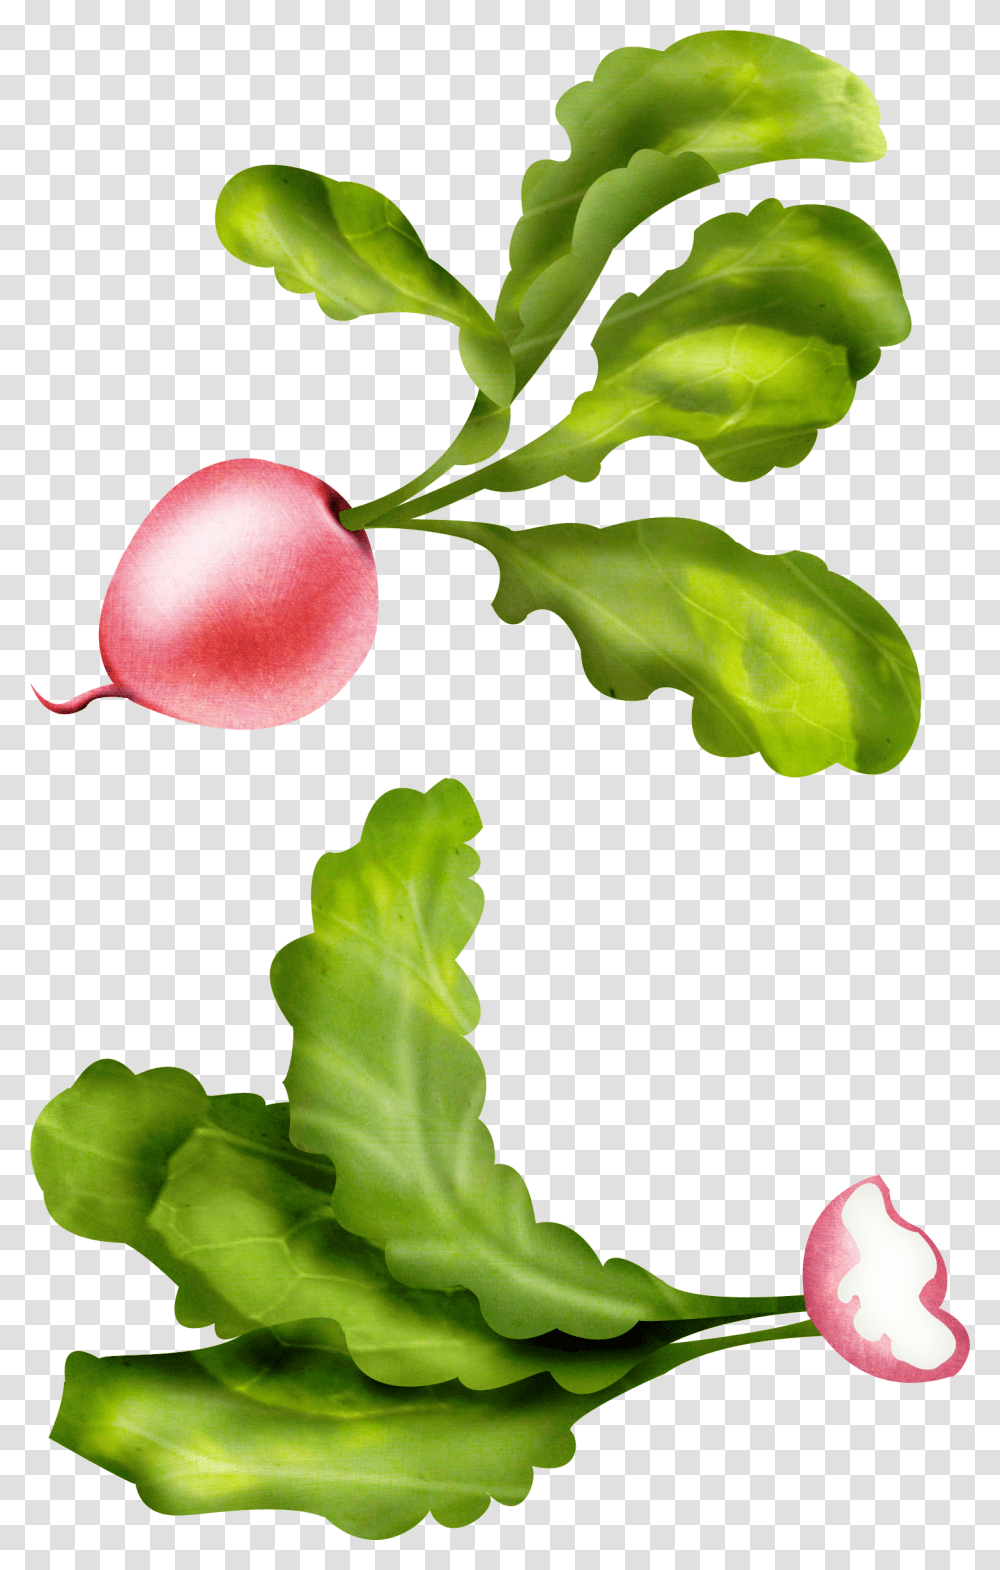 Radish, Vegetable, Plant, Leaf, Food Transparent Png